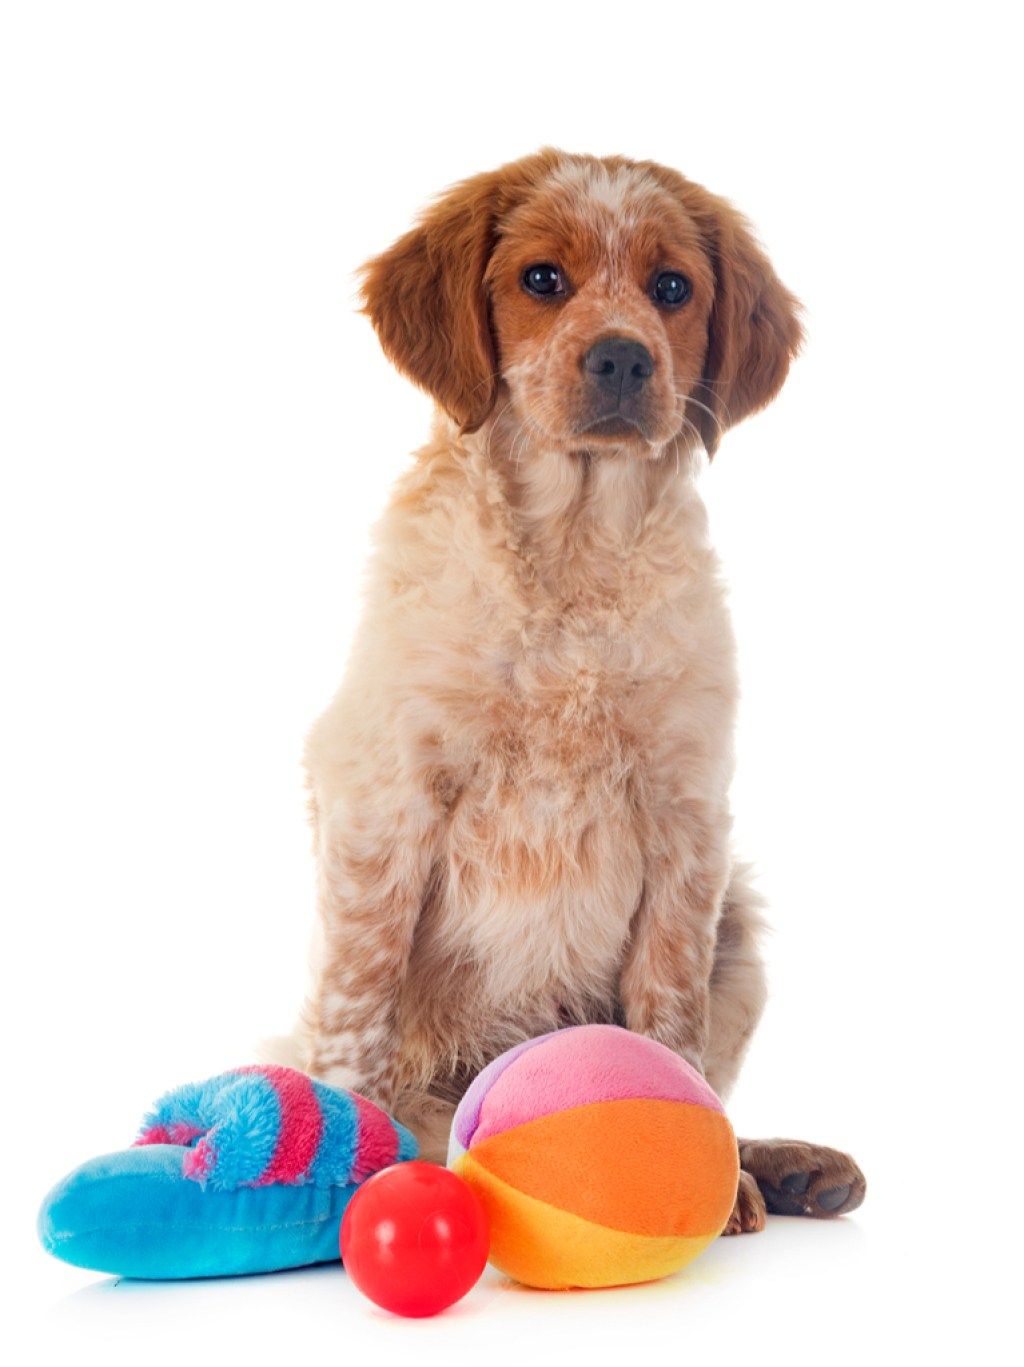 Dog with Pet Toys những điều bạn chưa từng biết chó có thể làm